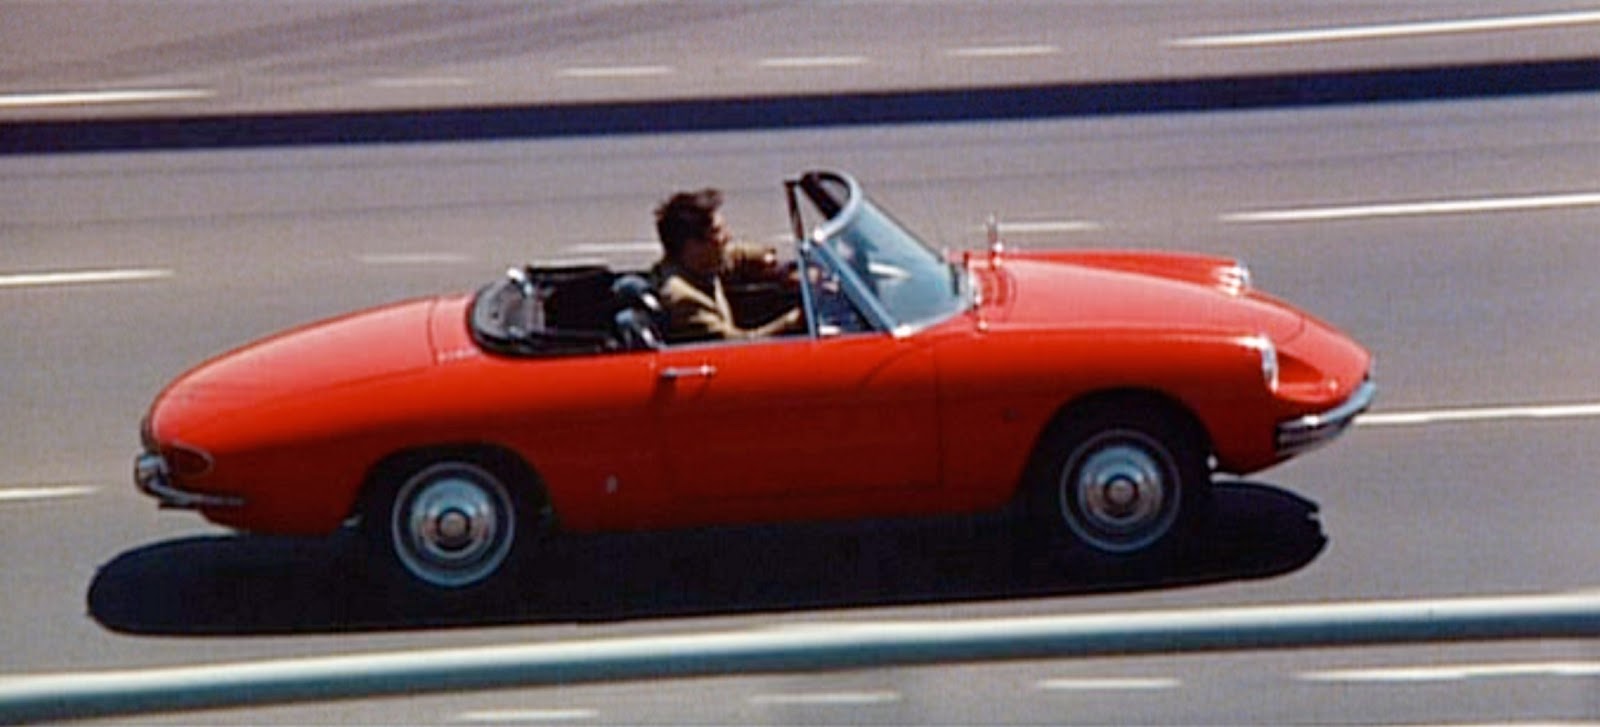 Alfa Romeo Duetto rossa di Dustin Hoffman ne Il laureato 